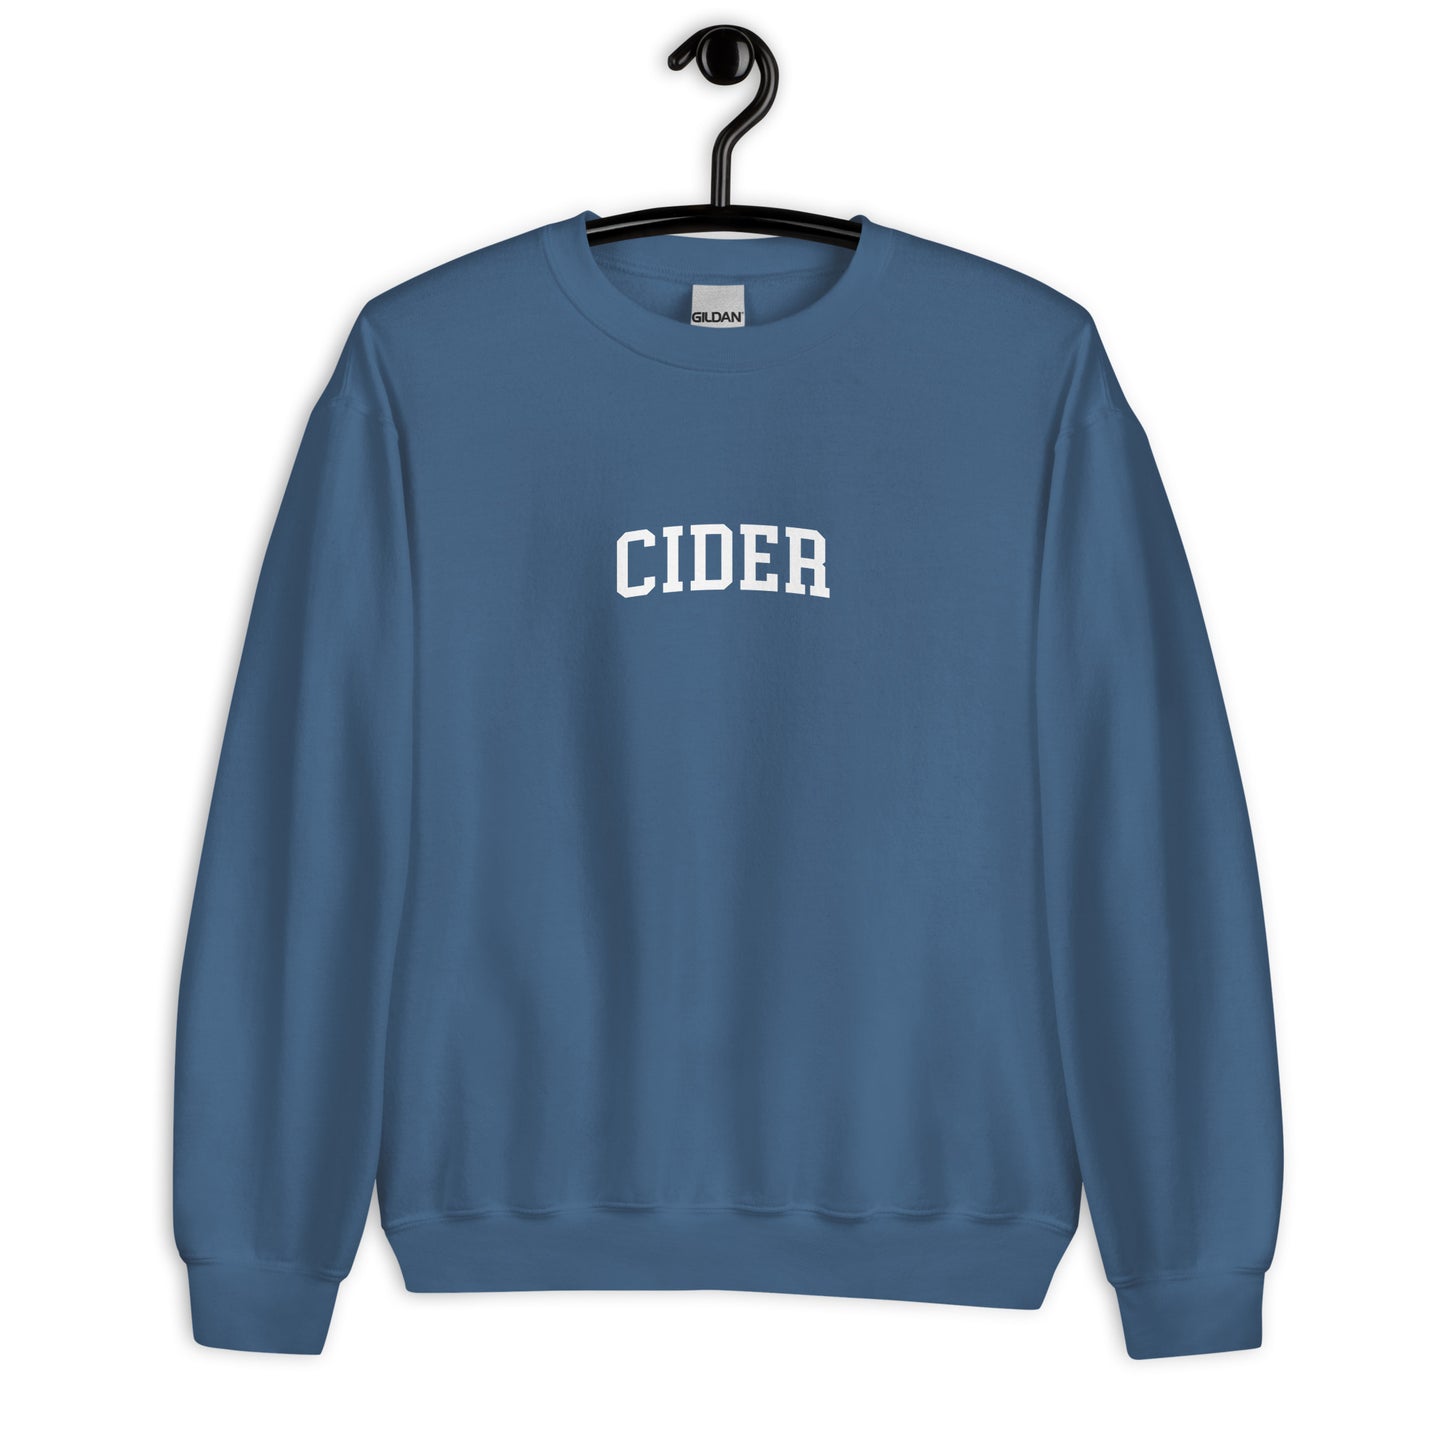 Cider Sweatshirt - Arched Font